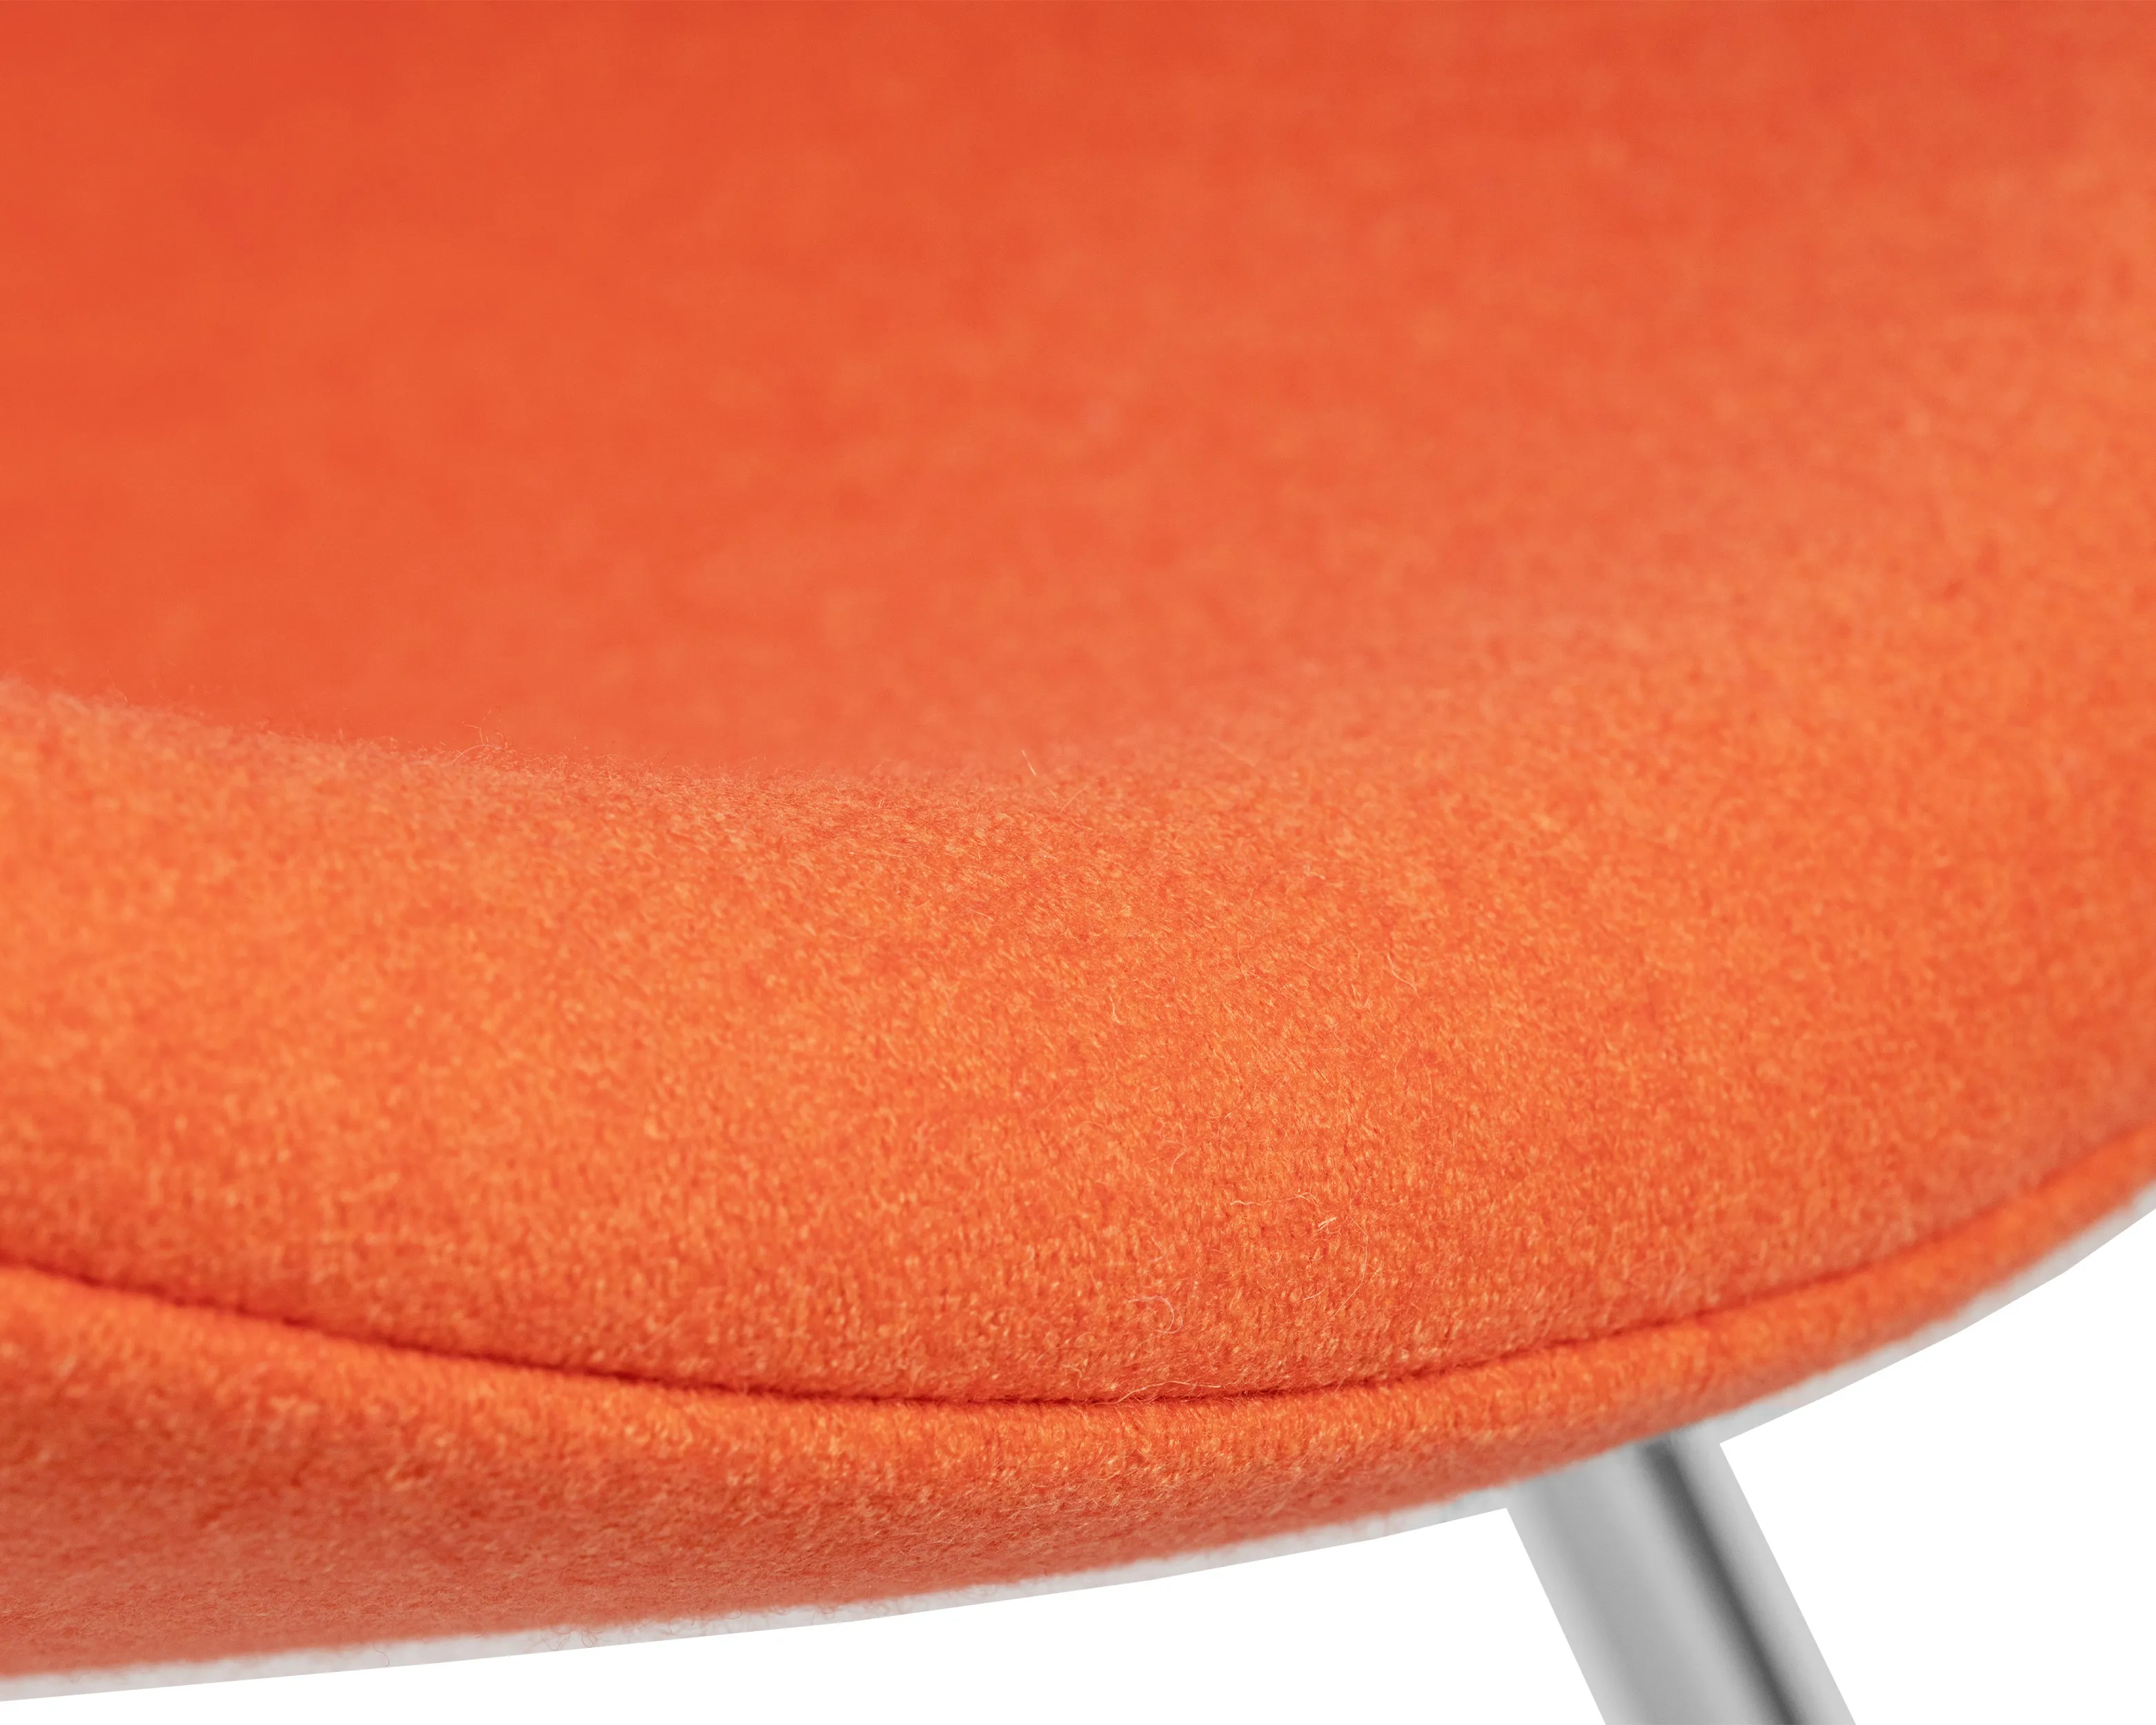 Кресло дизайнерское DOBRIN EMILY оранжевая ткань AF, хромированная сталь